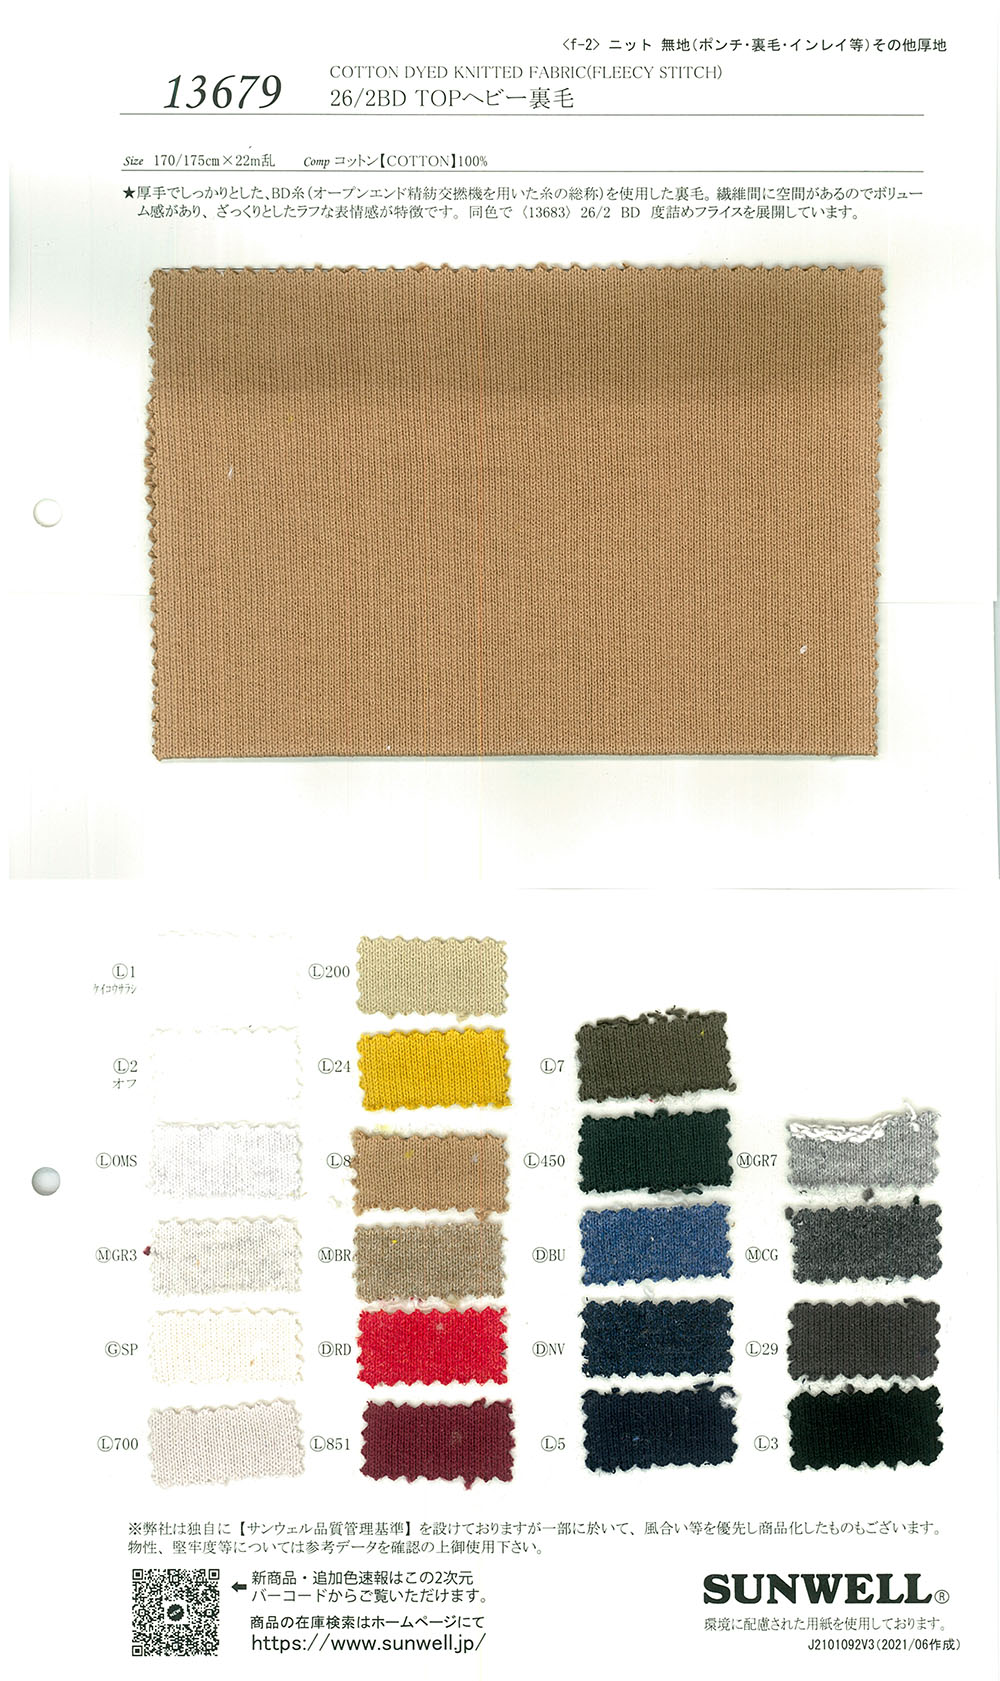 13679 26/ Fleece TOP Heavy Fleece[Textile / Fabric] SUNWELL